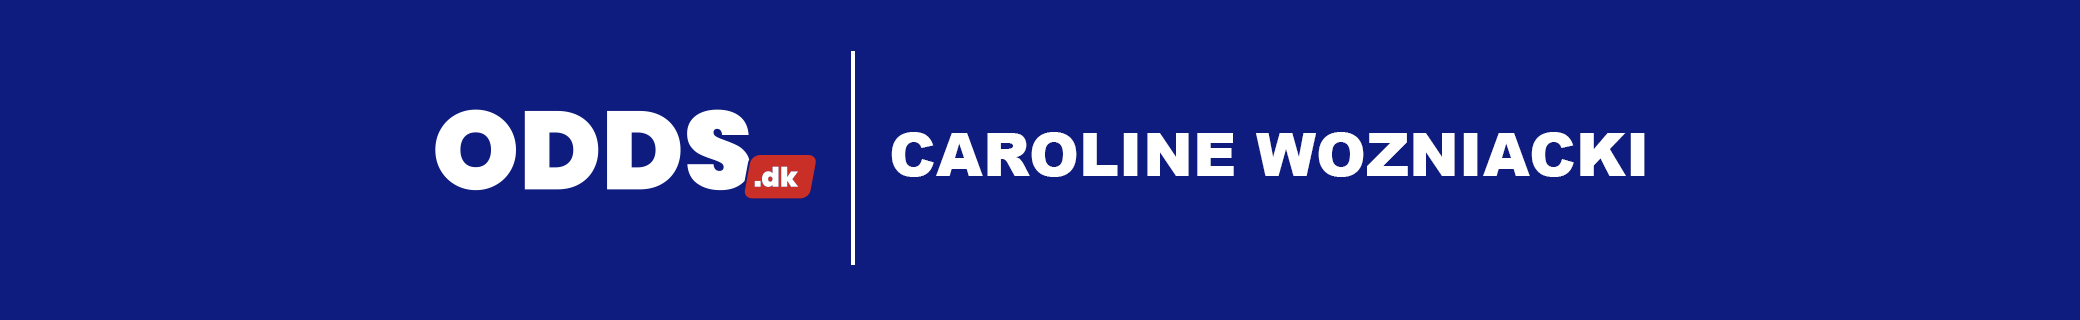 Odds på Caroline Wozniacki